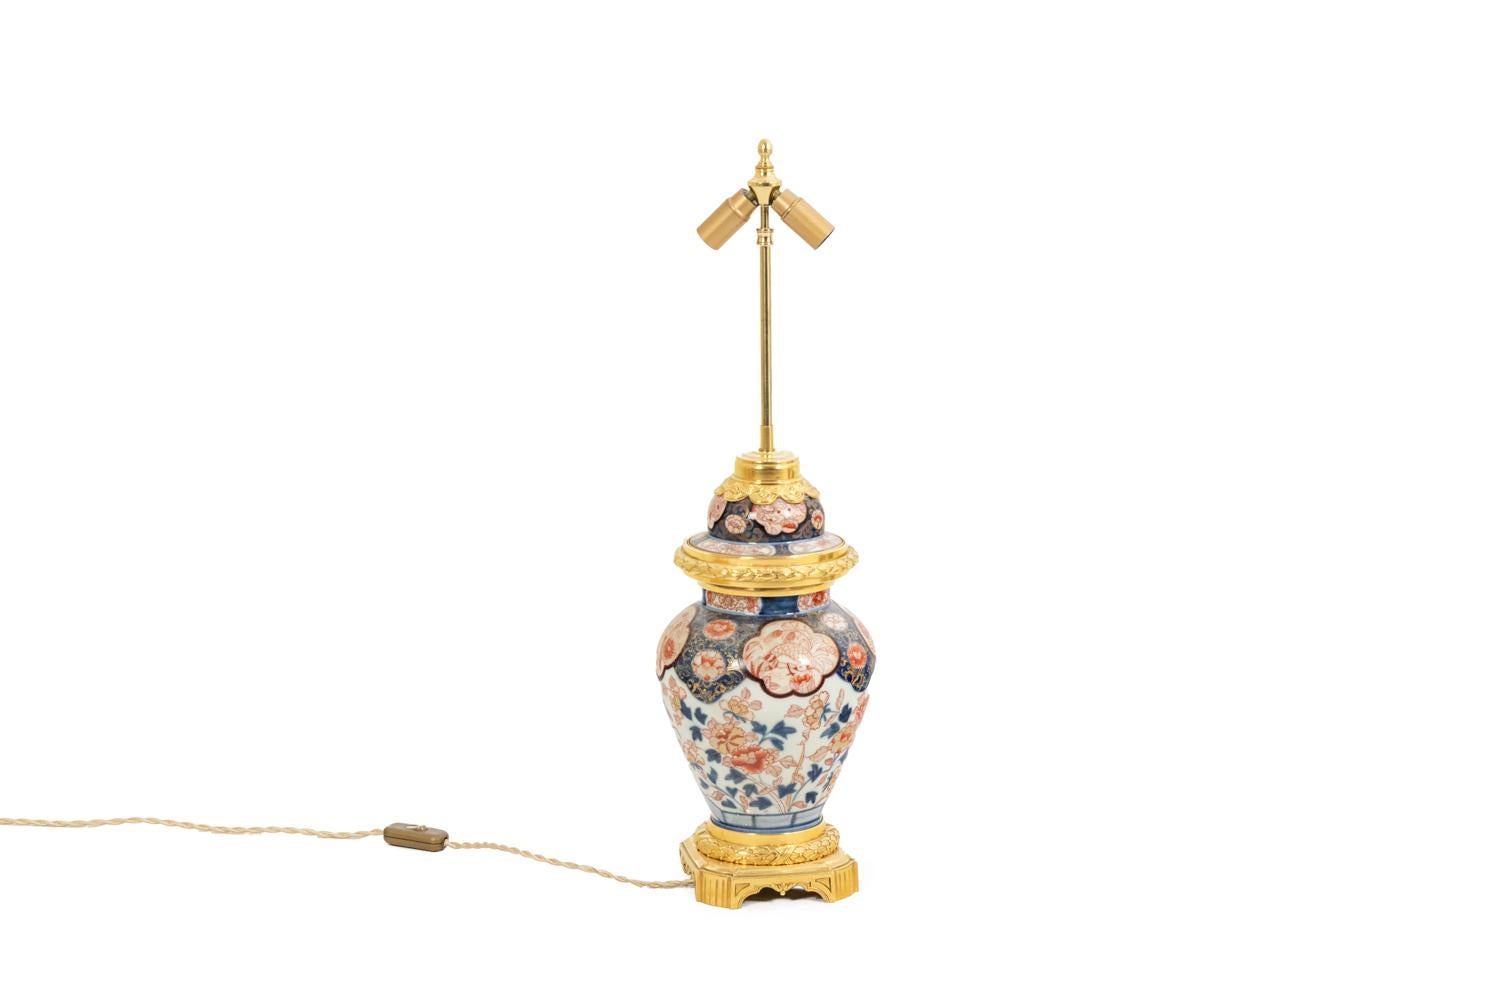 Lampe aus Imari-Porzellan und vergoldeter Bronze, verziert mit Blumen und Blättern in Safranrot, Kobaltblau und auf elfenbeinweißem Grund. Vierfüßiger Sockel, mit rudentem Muster.

Das Werk wurde um 1880 realisiert.

Neue und funktionierende